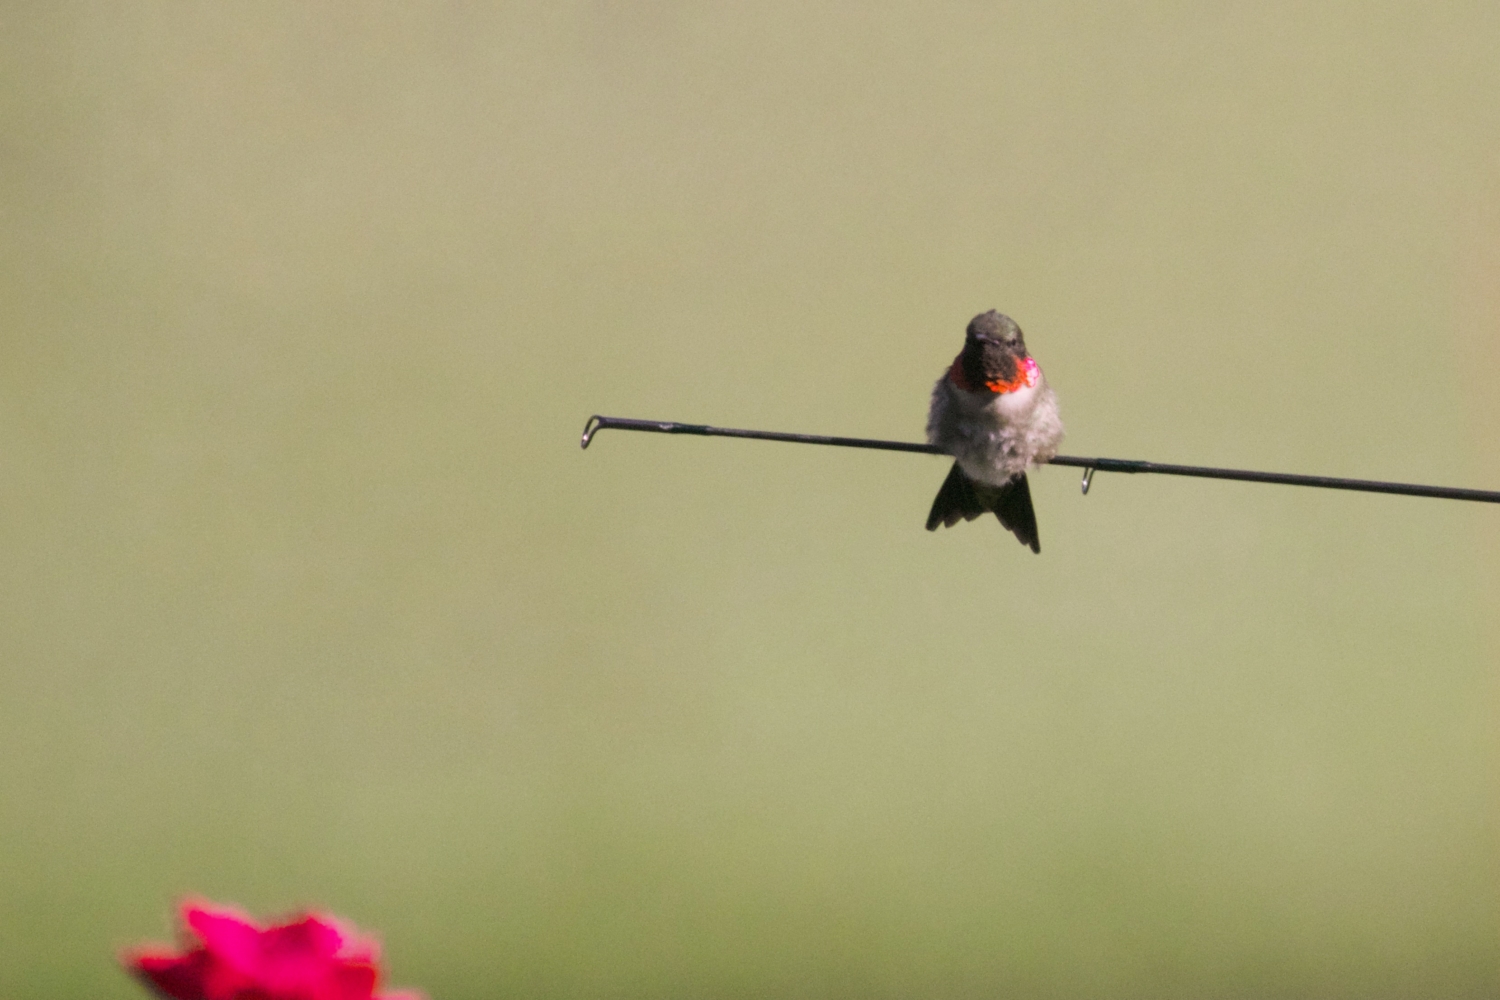 Ruby throated hummingbird (male)